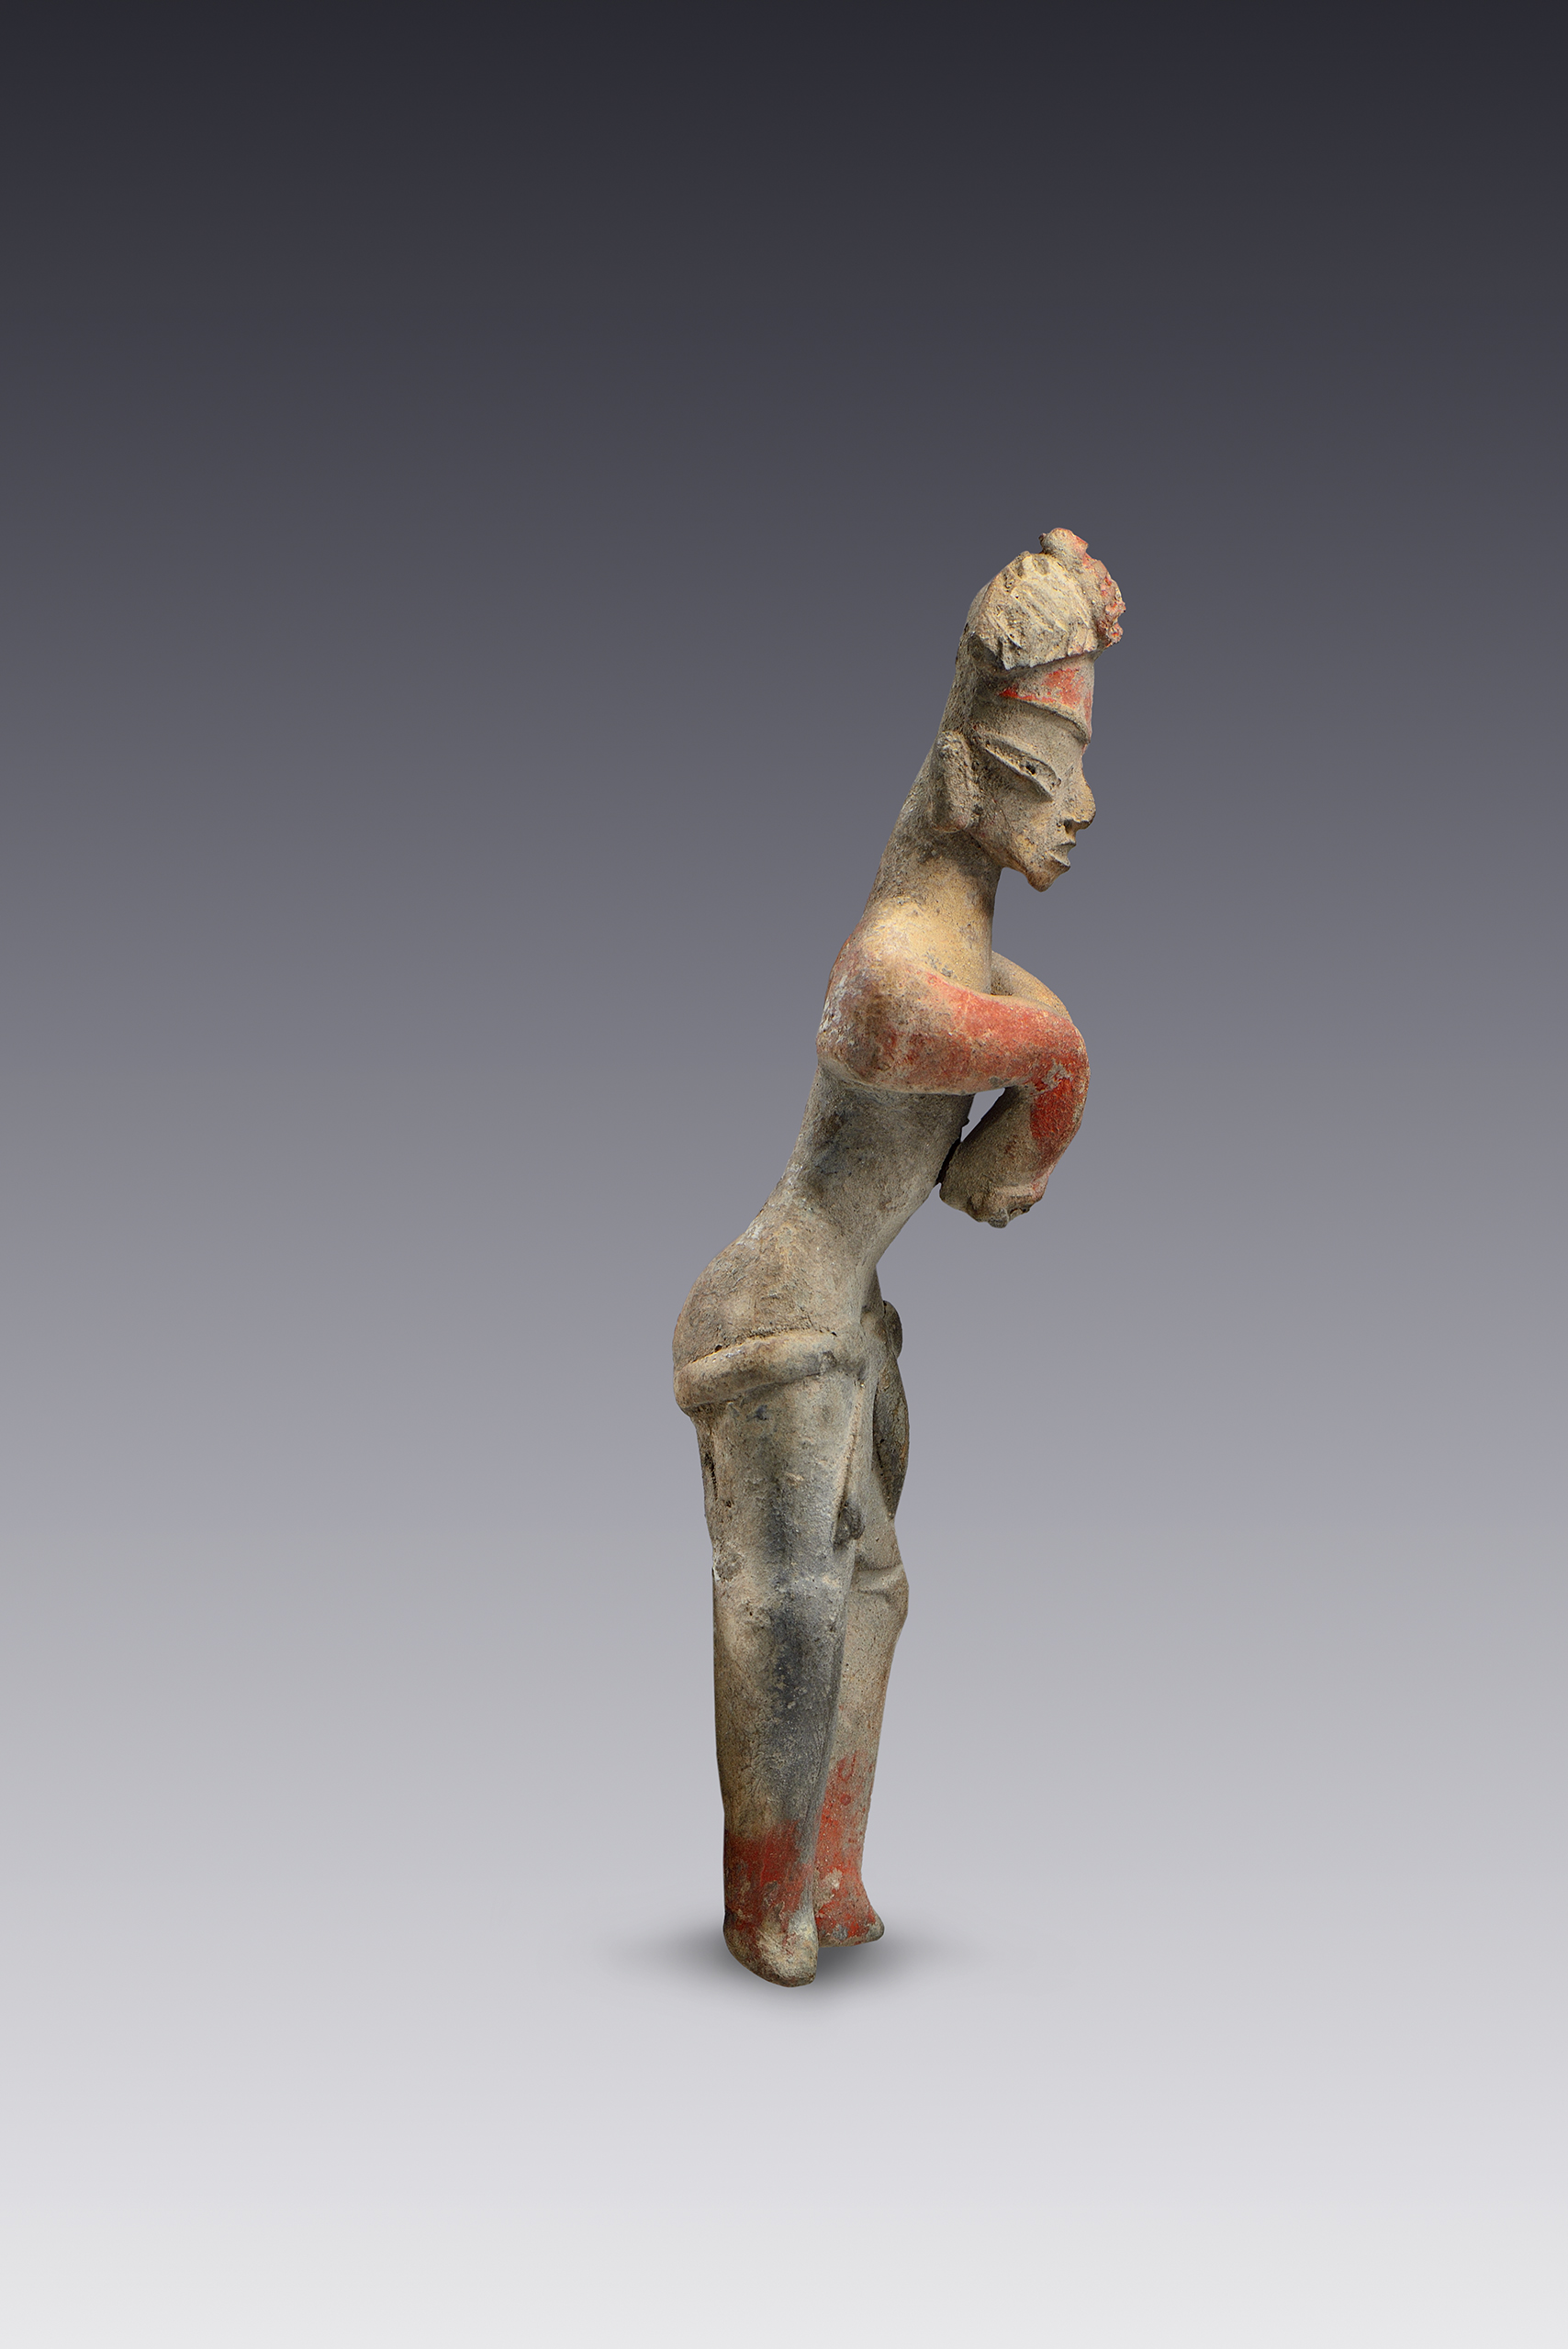 Hombres danzantes | El México antiguo. Salas de Arte Prehispánico | Museo Amparo, Puebla